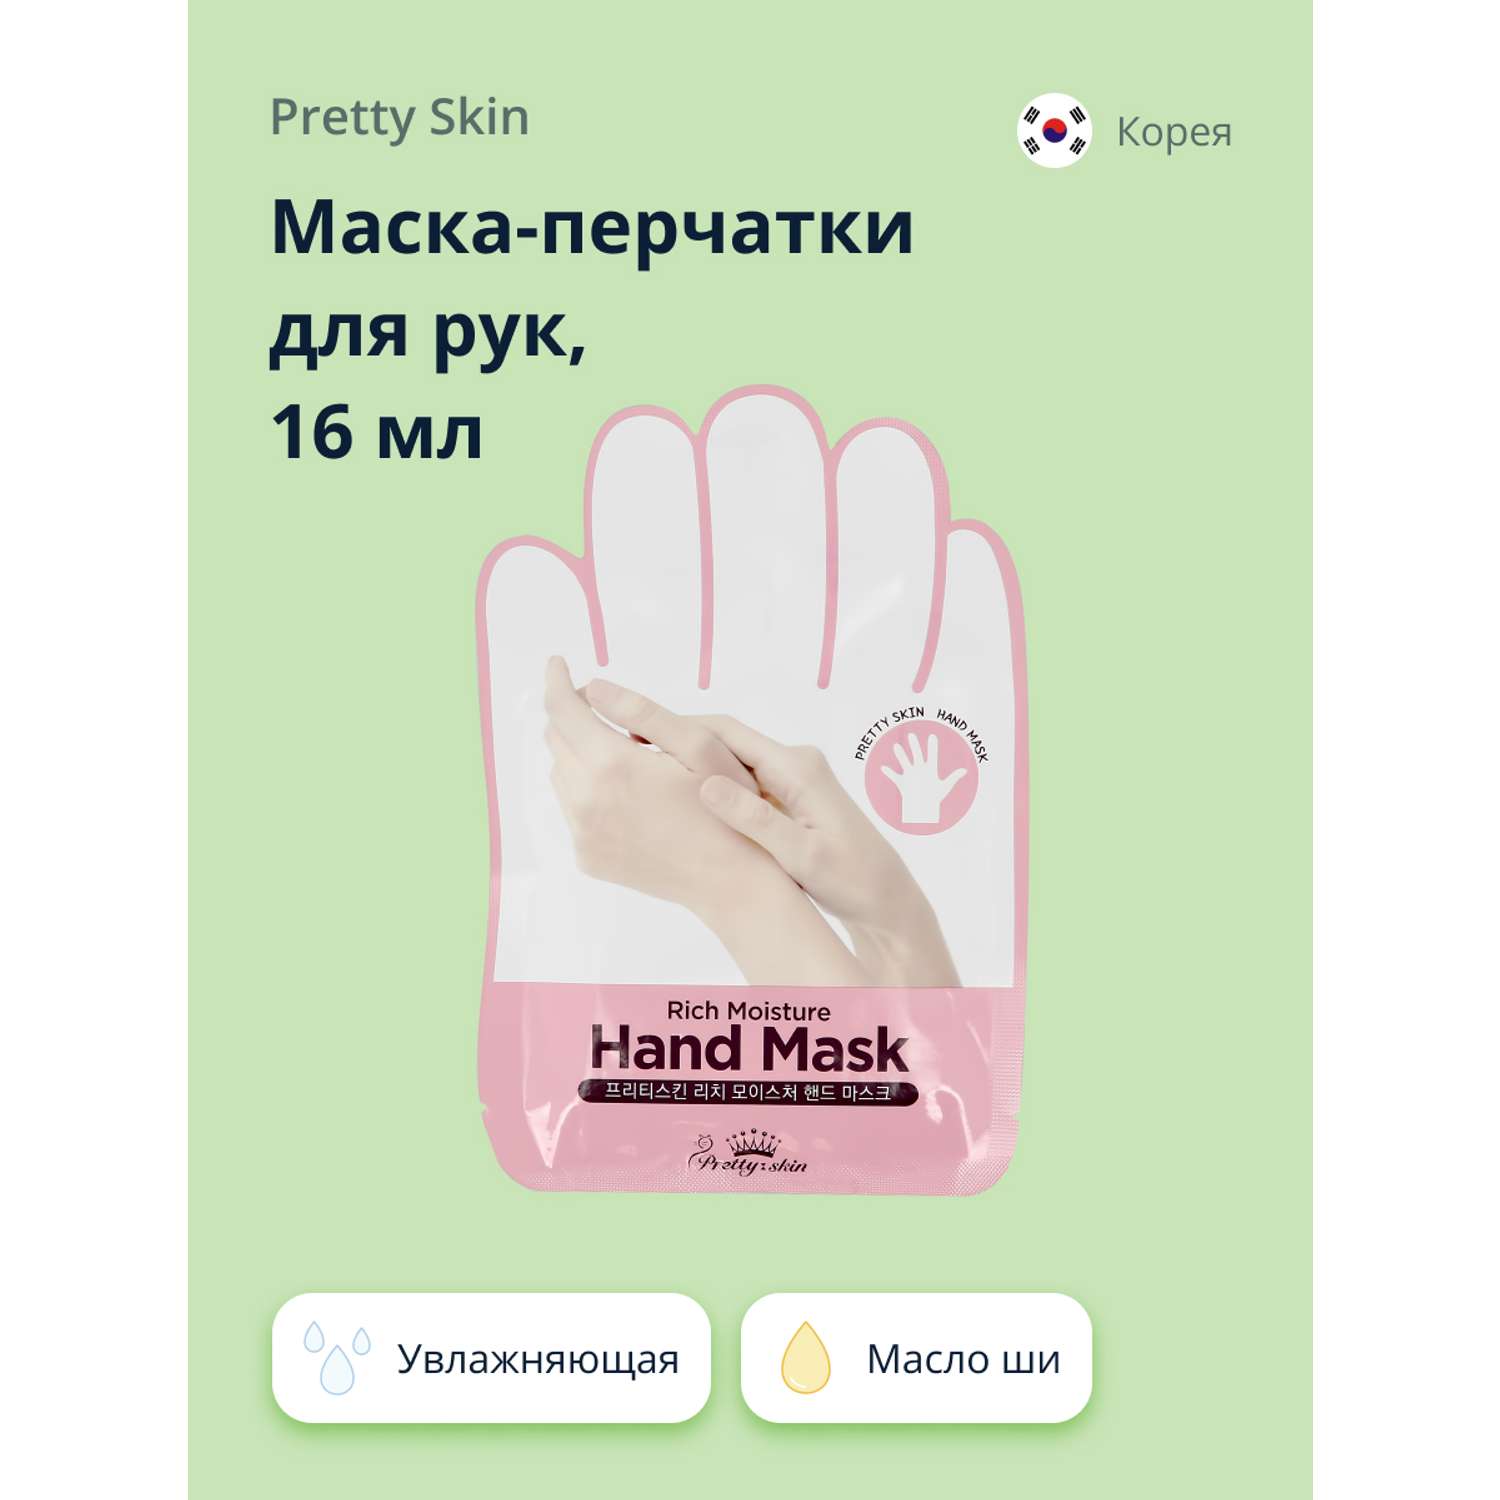 Маска-перчатки для рук Pretty Skin увлажняющая 16 мл - фото 1